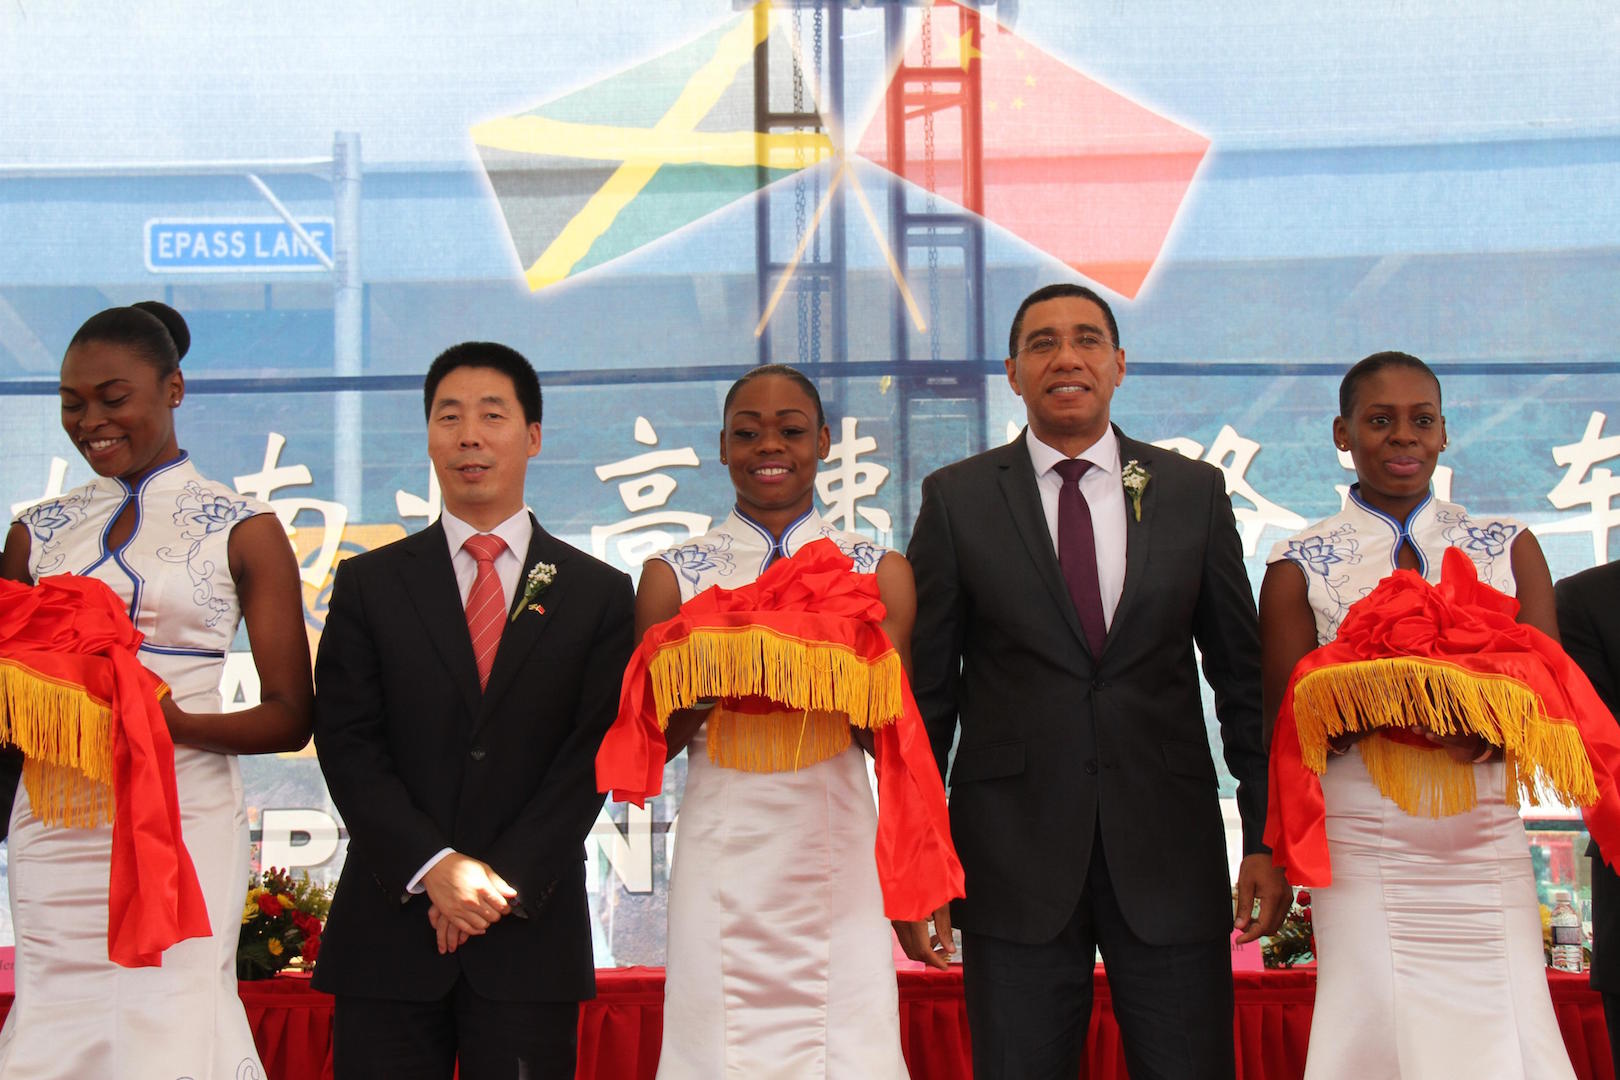 <p>El primer ministro de Jamaica, Andrew Holness, y el embajador de China en Jamaica, Niu Qingbao, asisten a la ceremonia de inauguración de la carretera Norte-Sur del CCCC en Jamaica, en 2016 (imagen: Alamy)</p>